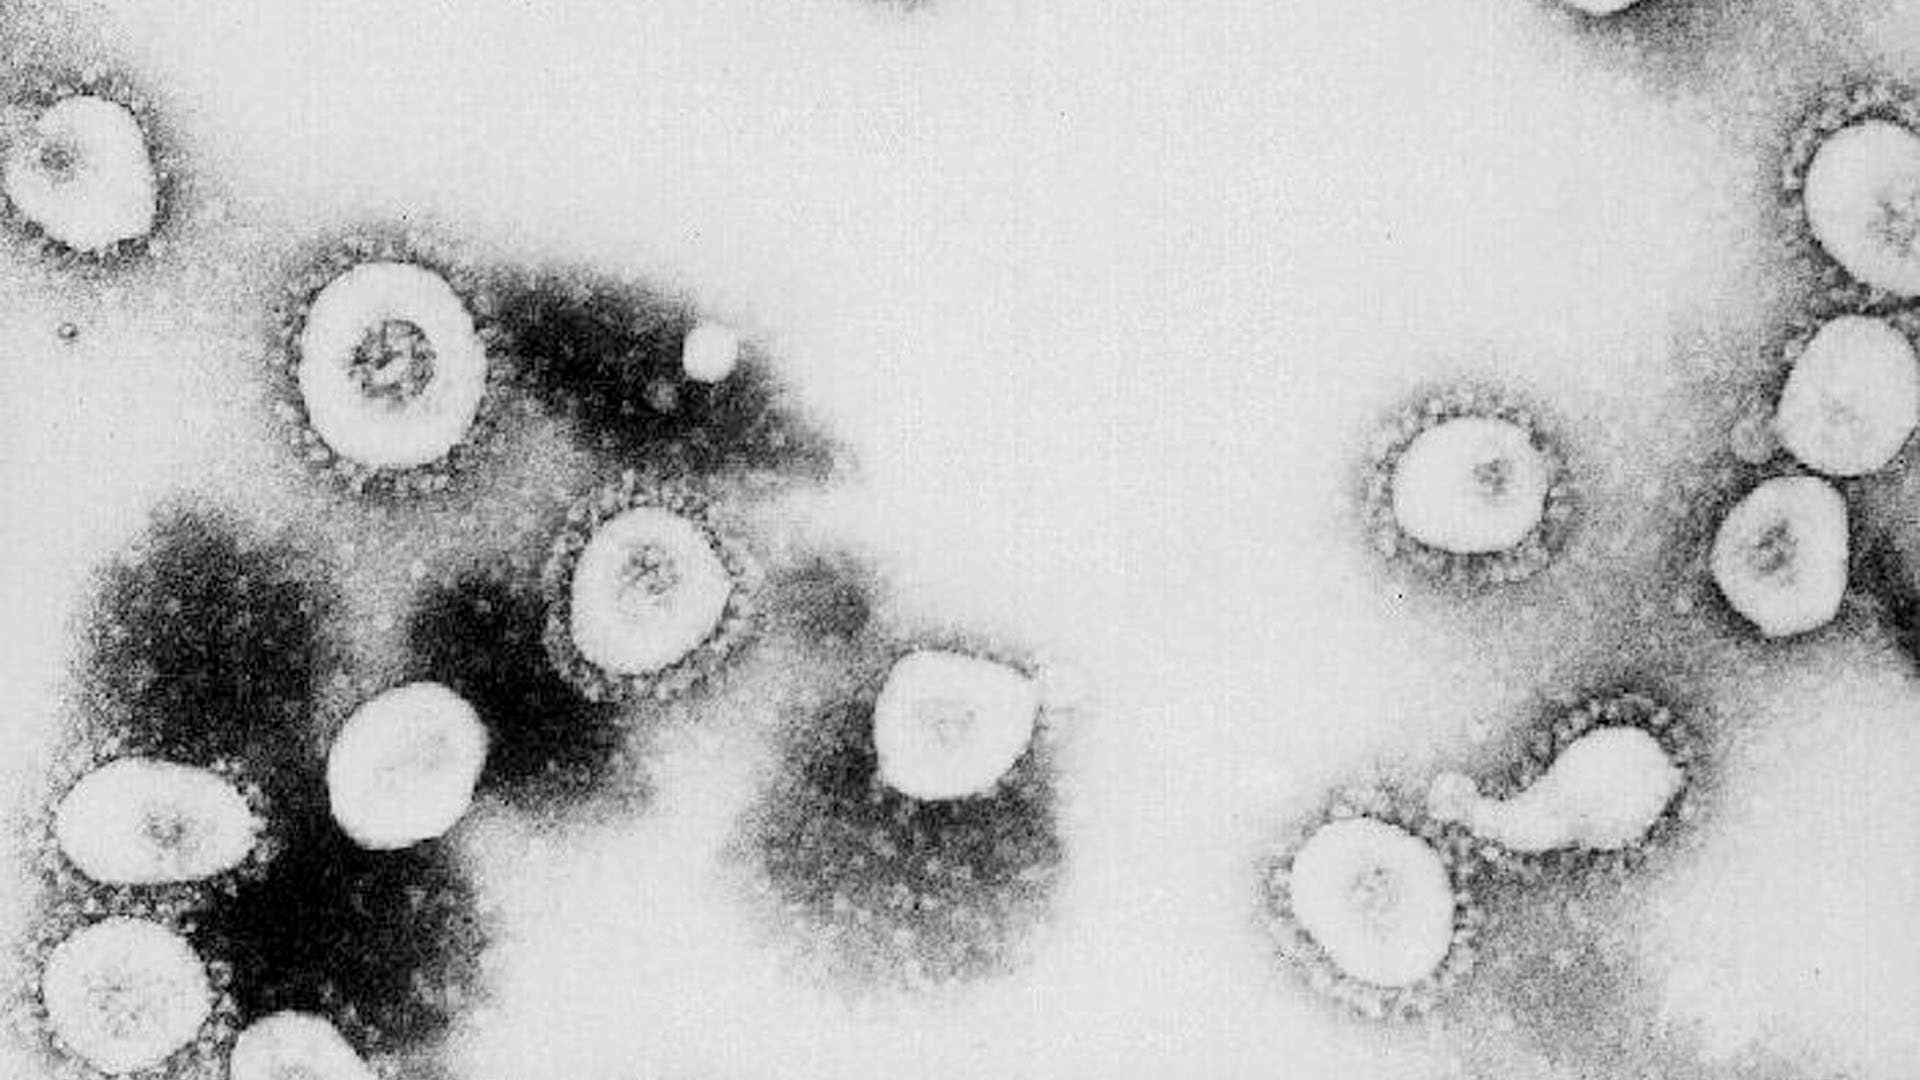 Microscopic view of the Coronavirus